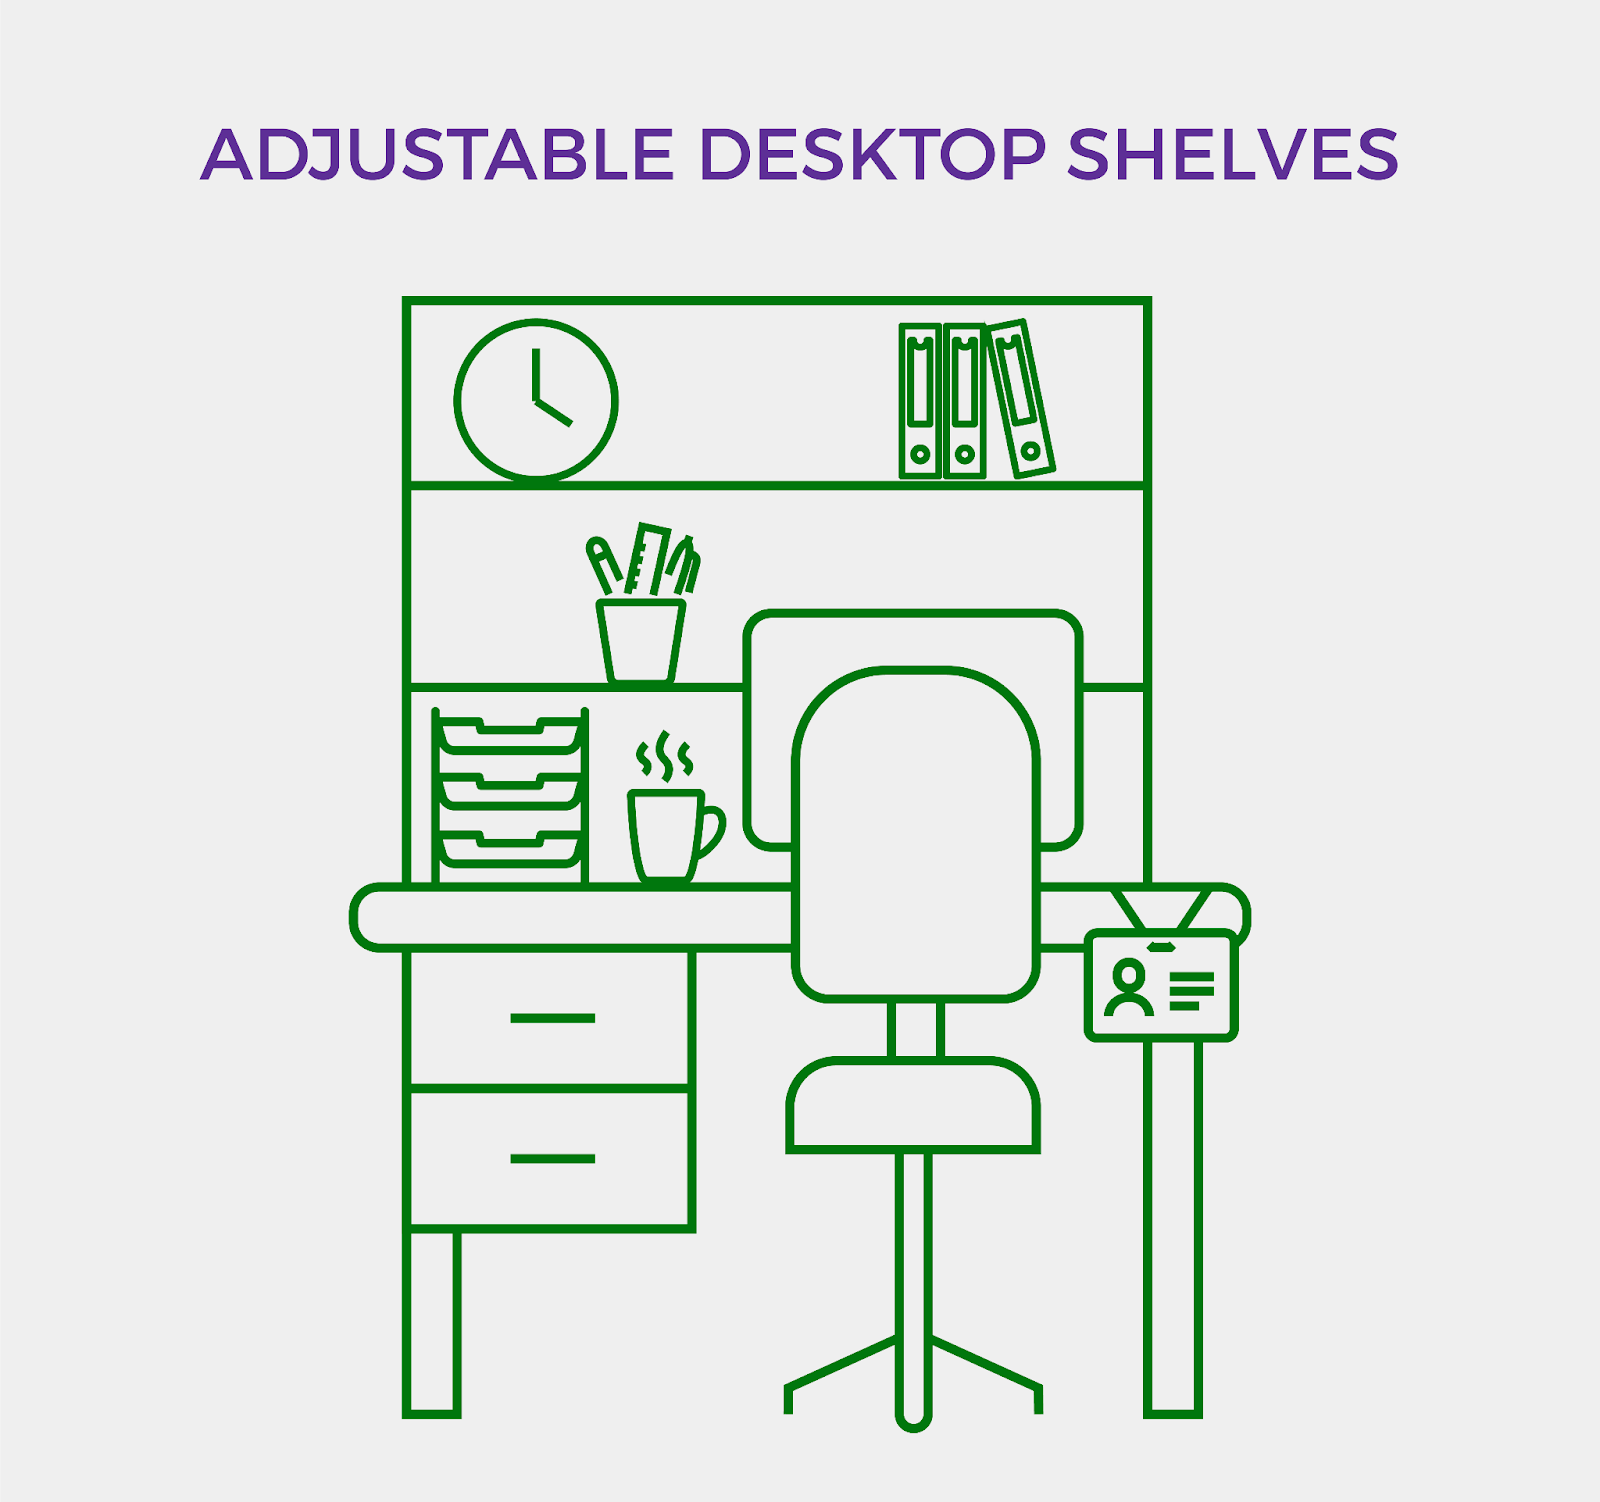 Adjustable desktop shelves